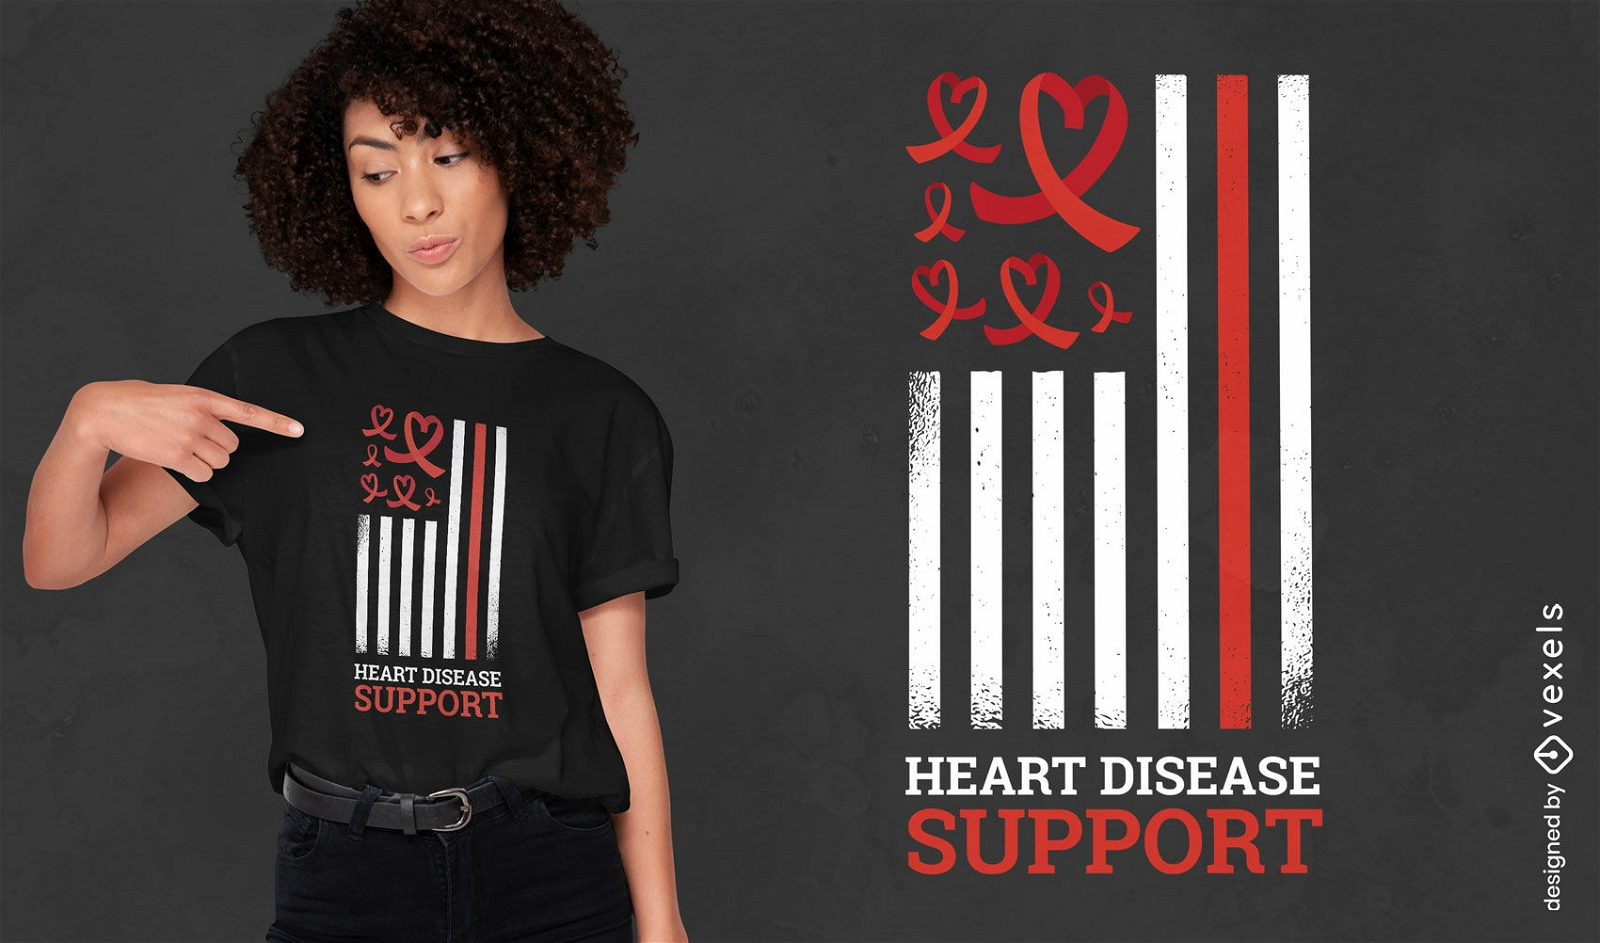 Heart disease support t-shirt design